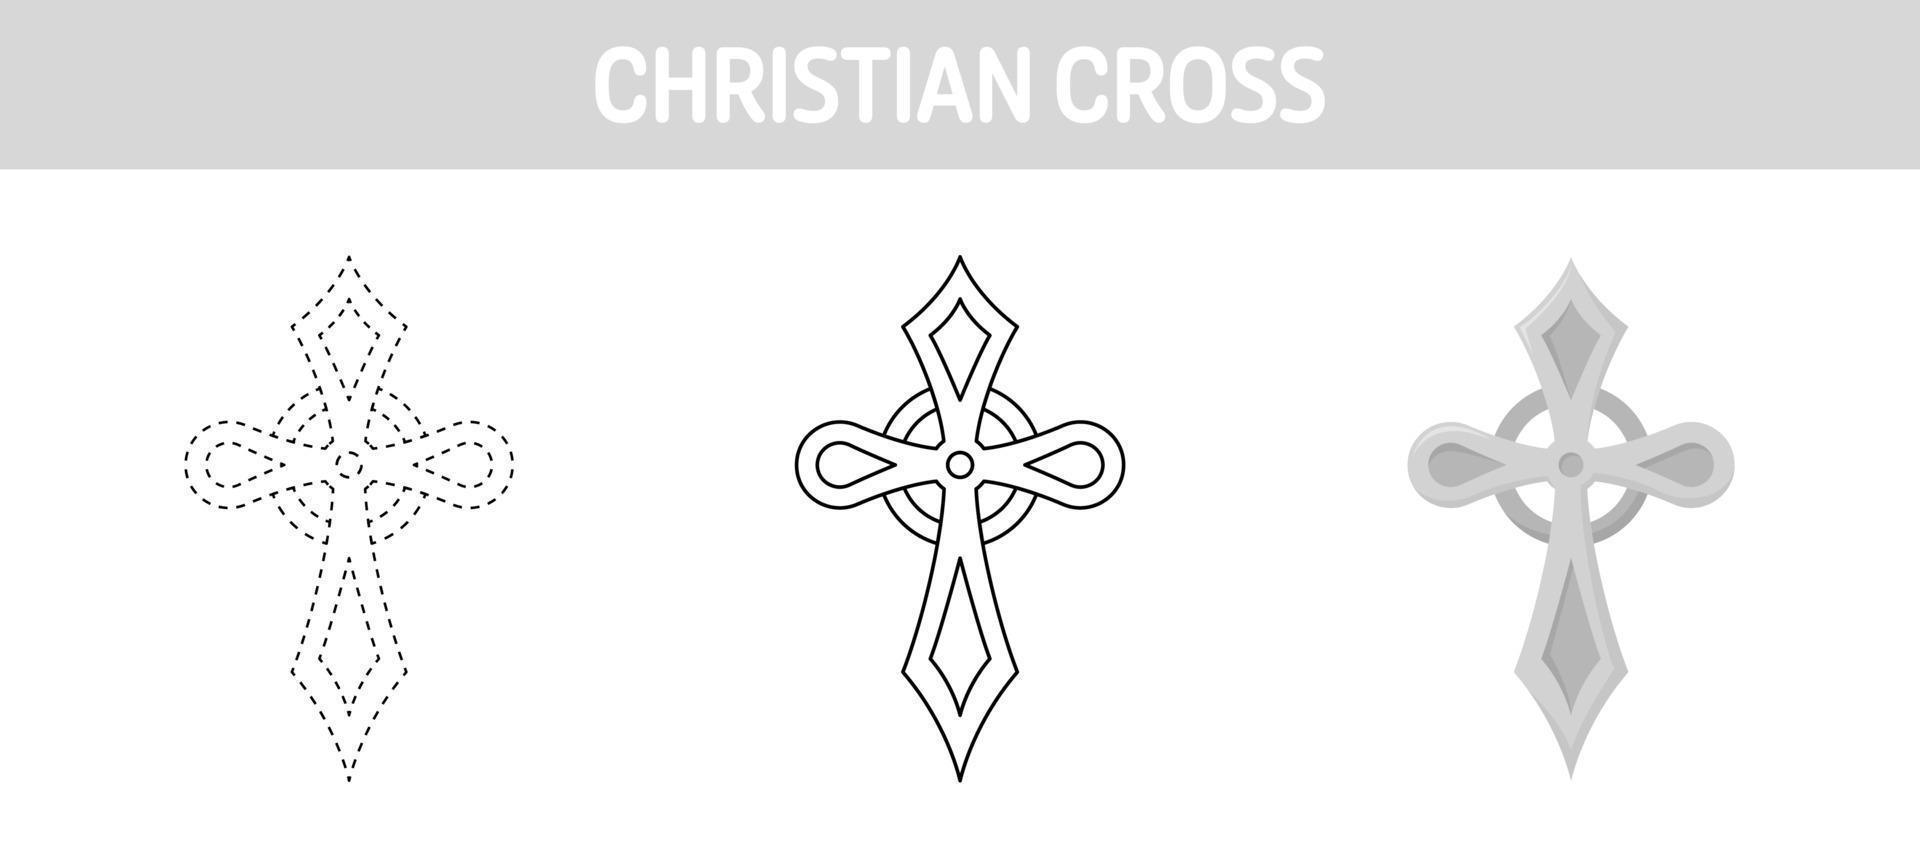 feuille de travail de traçage et de coloriage de la croix chrétienne pour les enfants vecteur